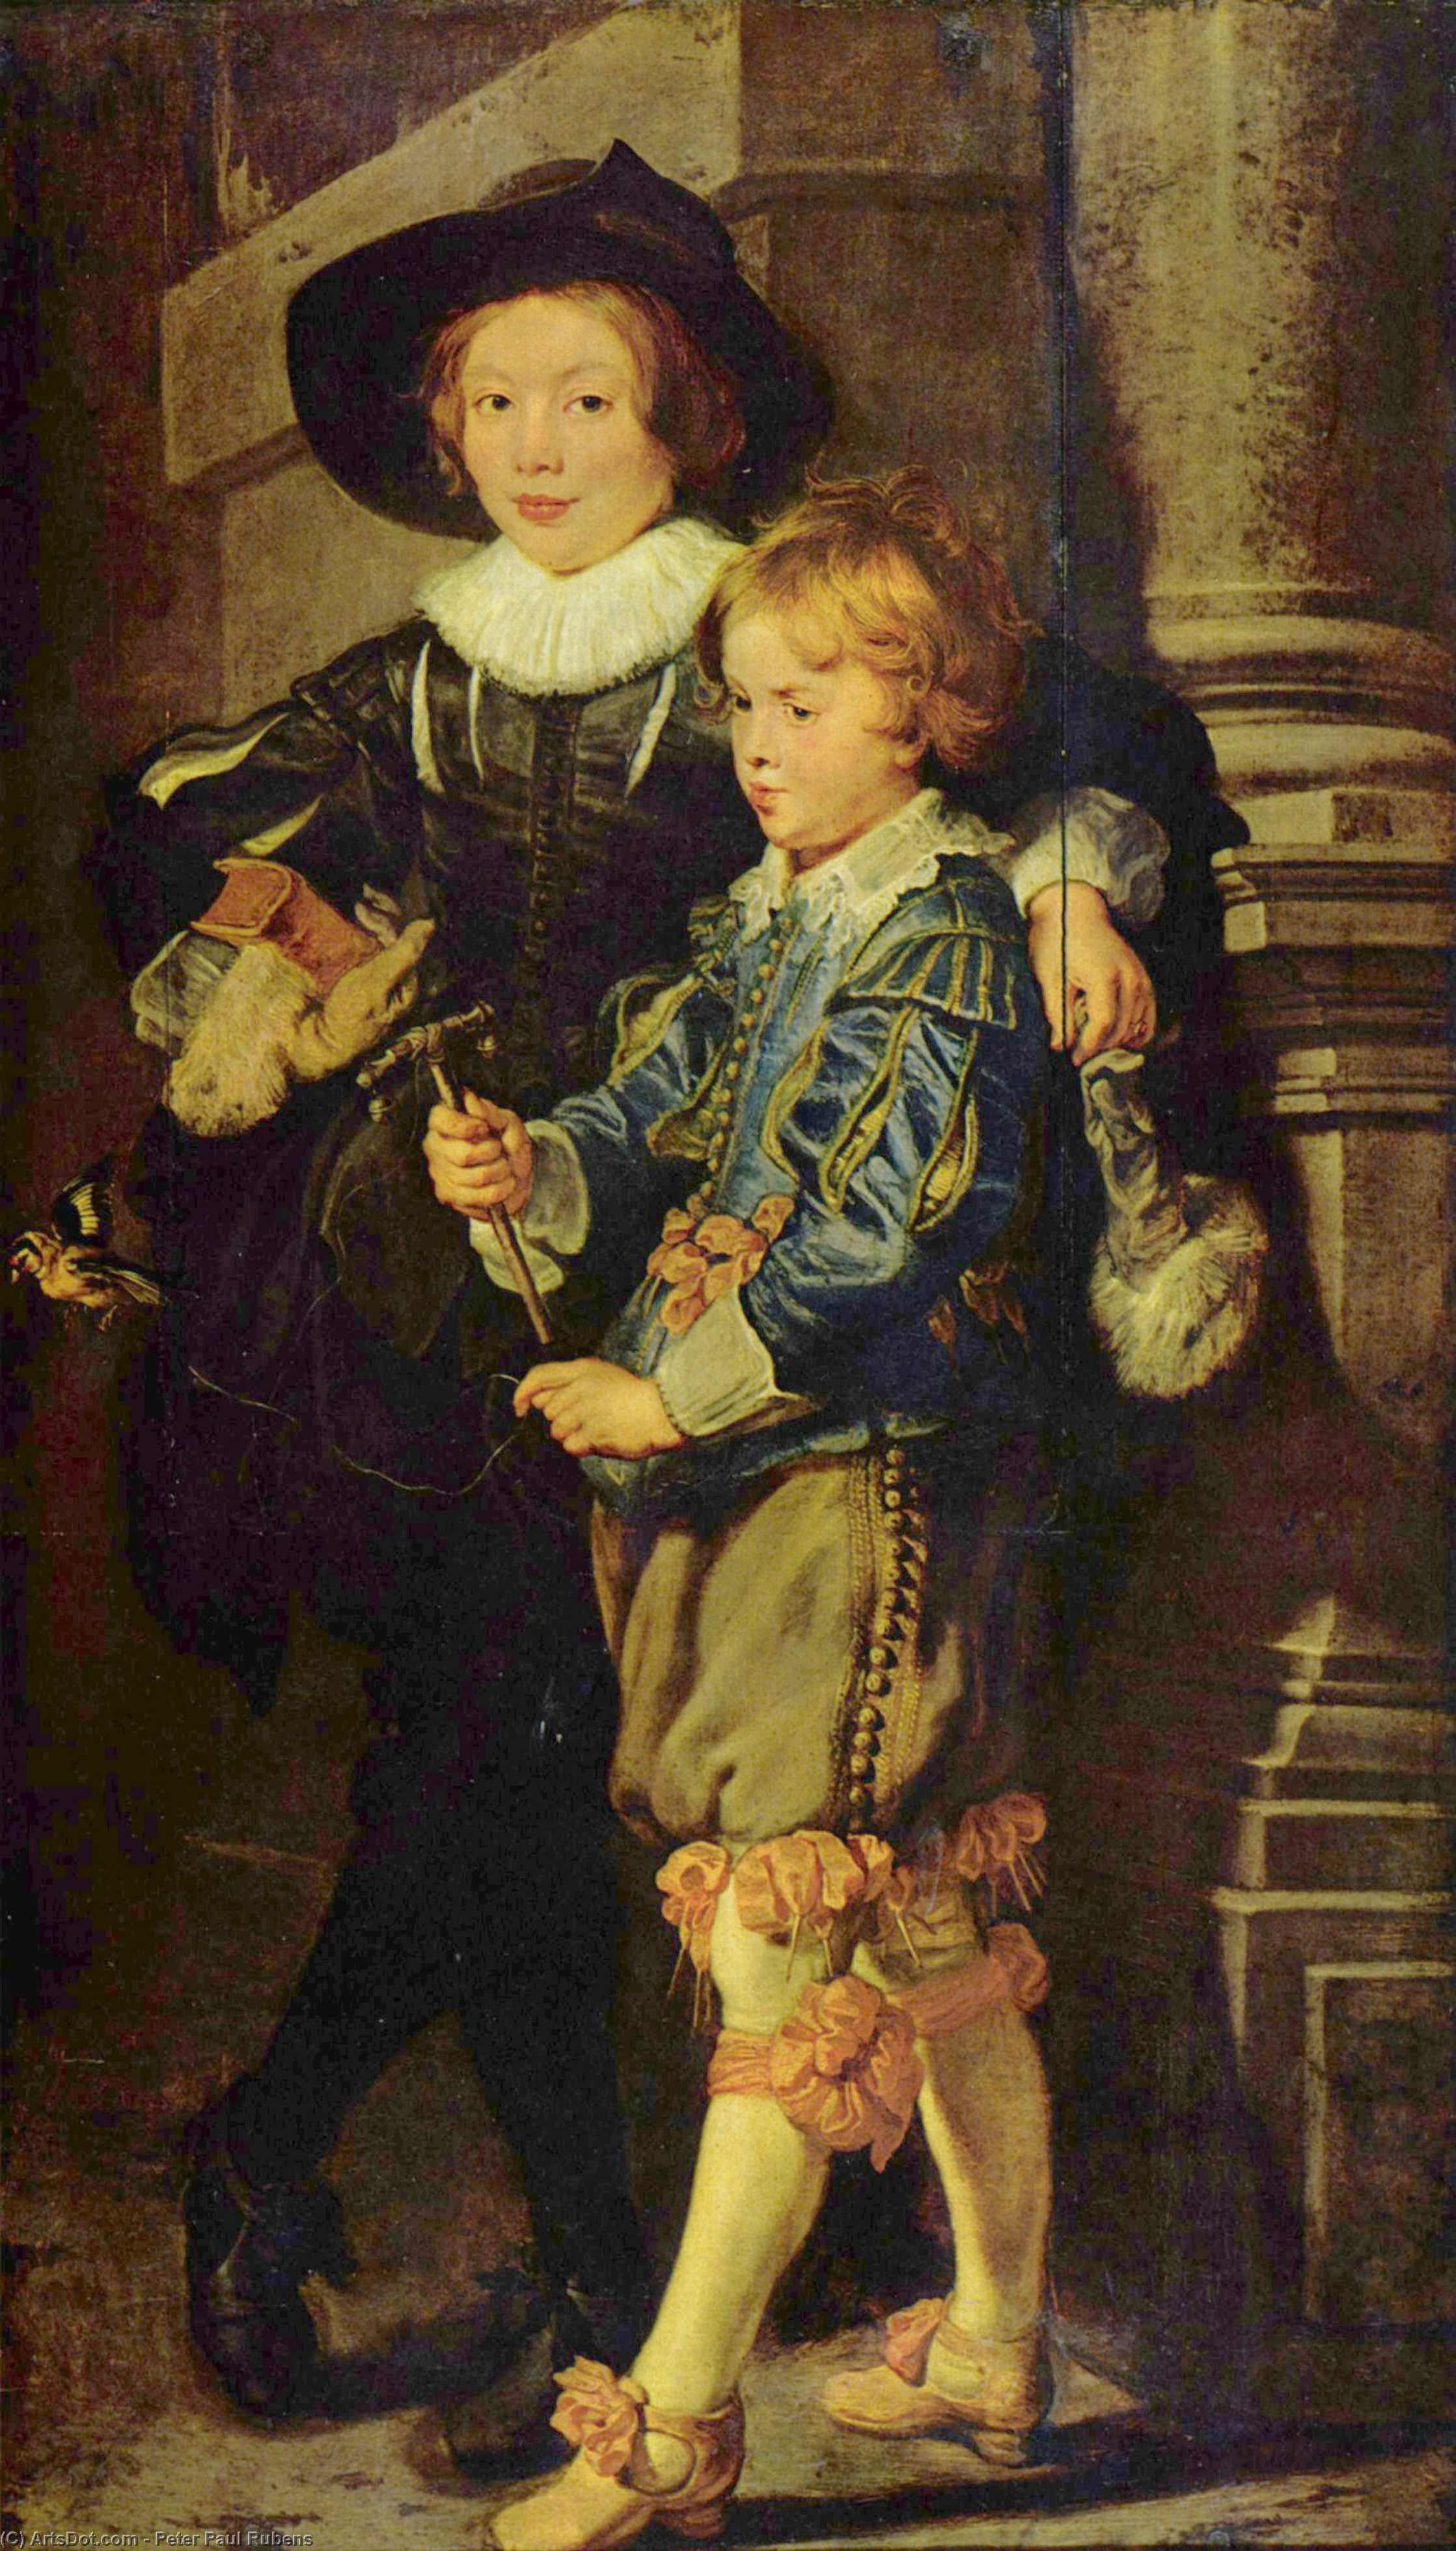 WikiOO.org - Güzel Sanatlar Ansiklopedisi - Resim, Resimler Peter Paul Rubens - Portr t von Albert und Nicolas, S hne des K nstlers